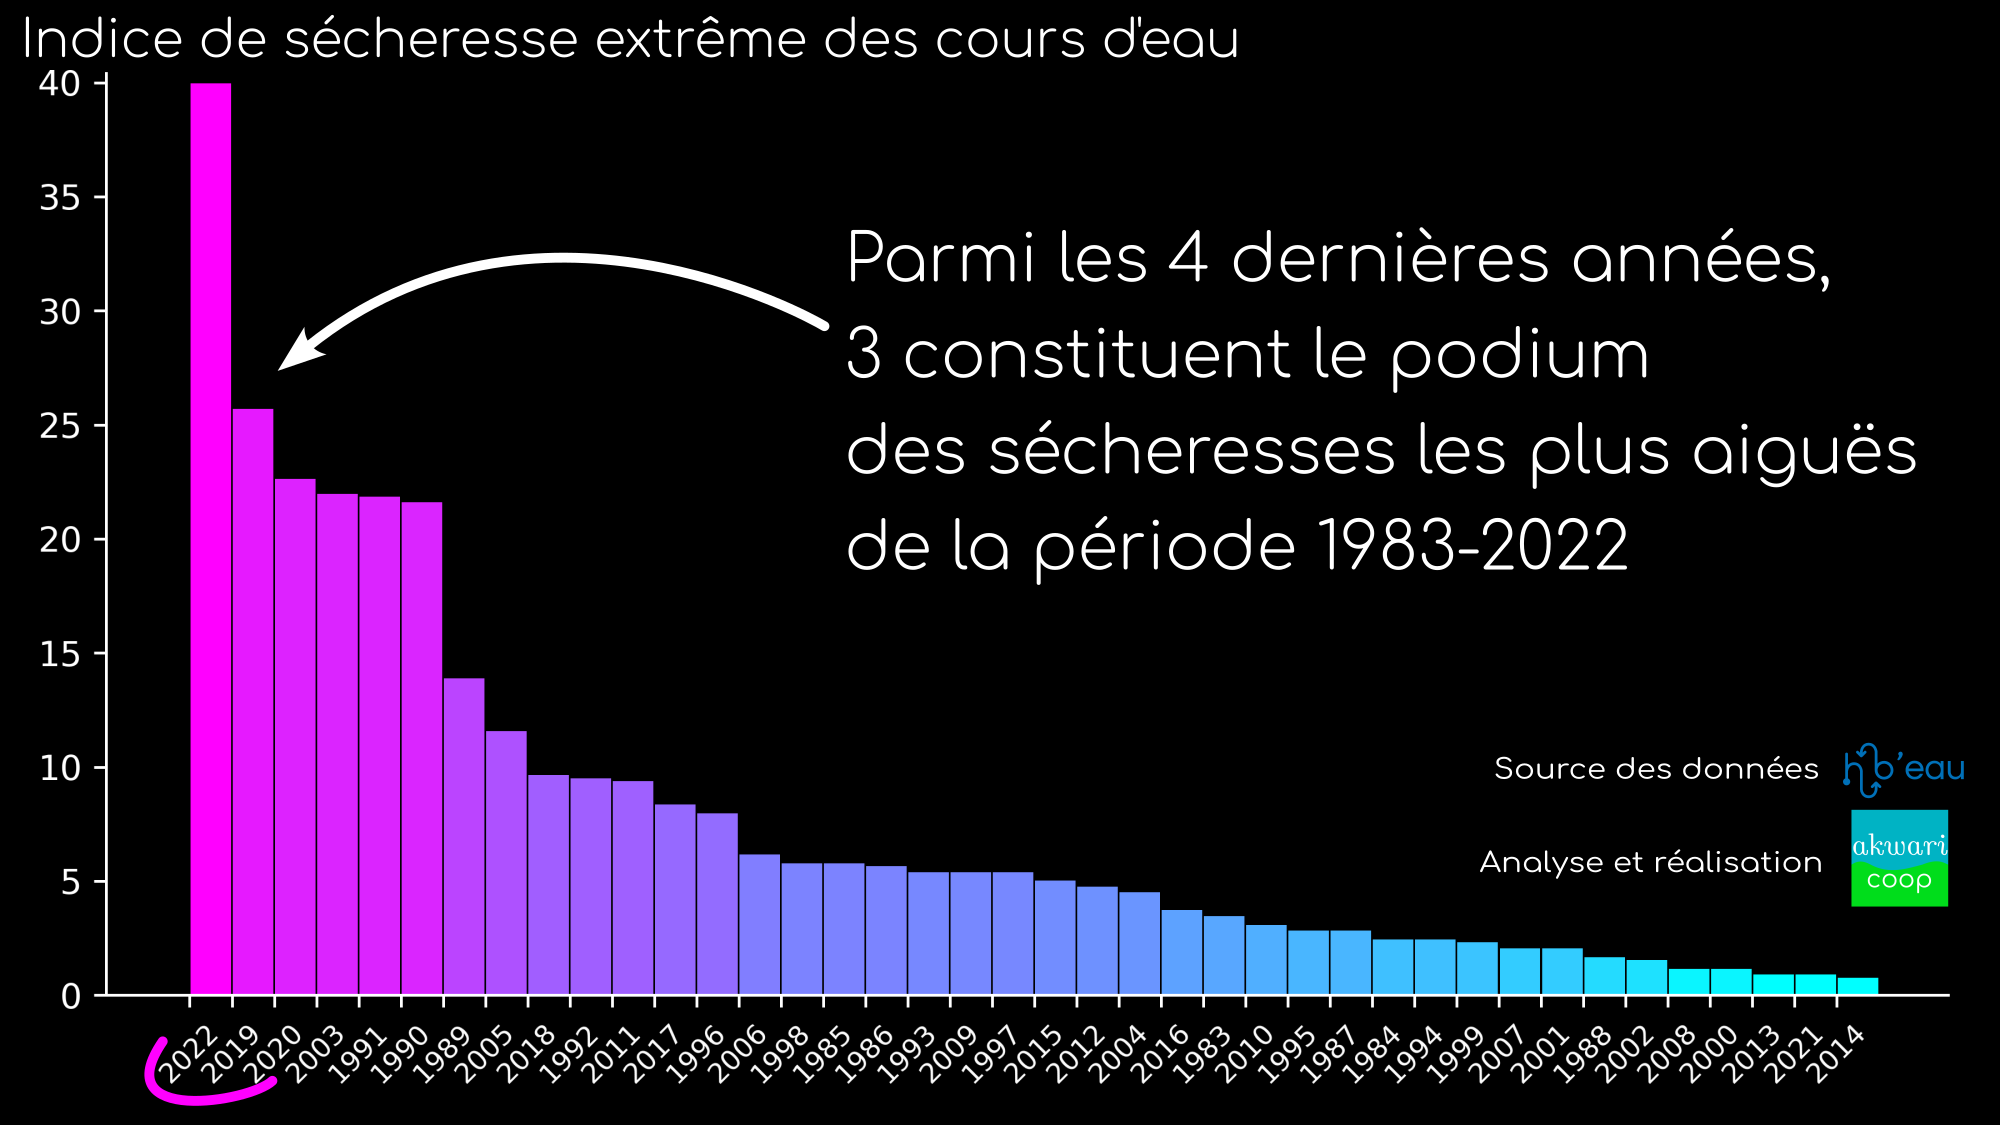 Classement de l'intensité et de l'ampleur des sécheresses hydrologiques des cours d'eau en France, entre 1983 et 2022.